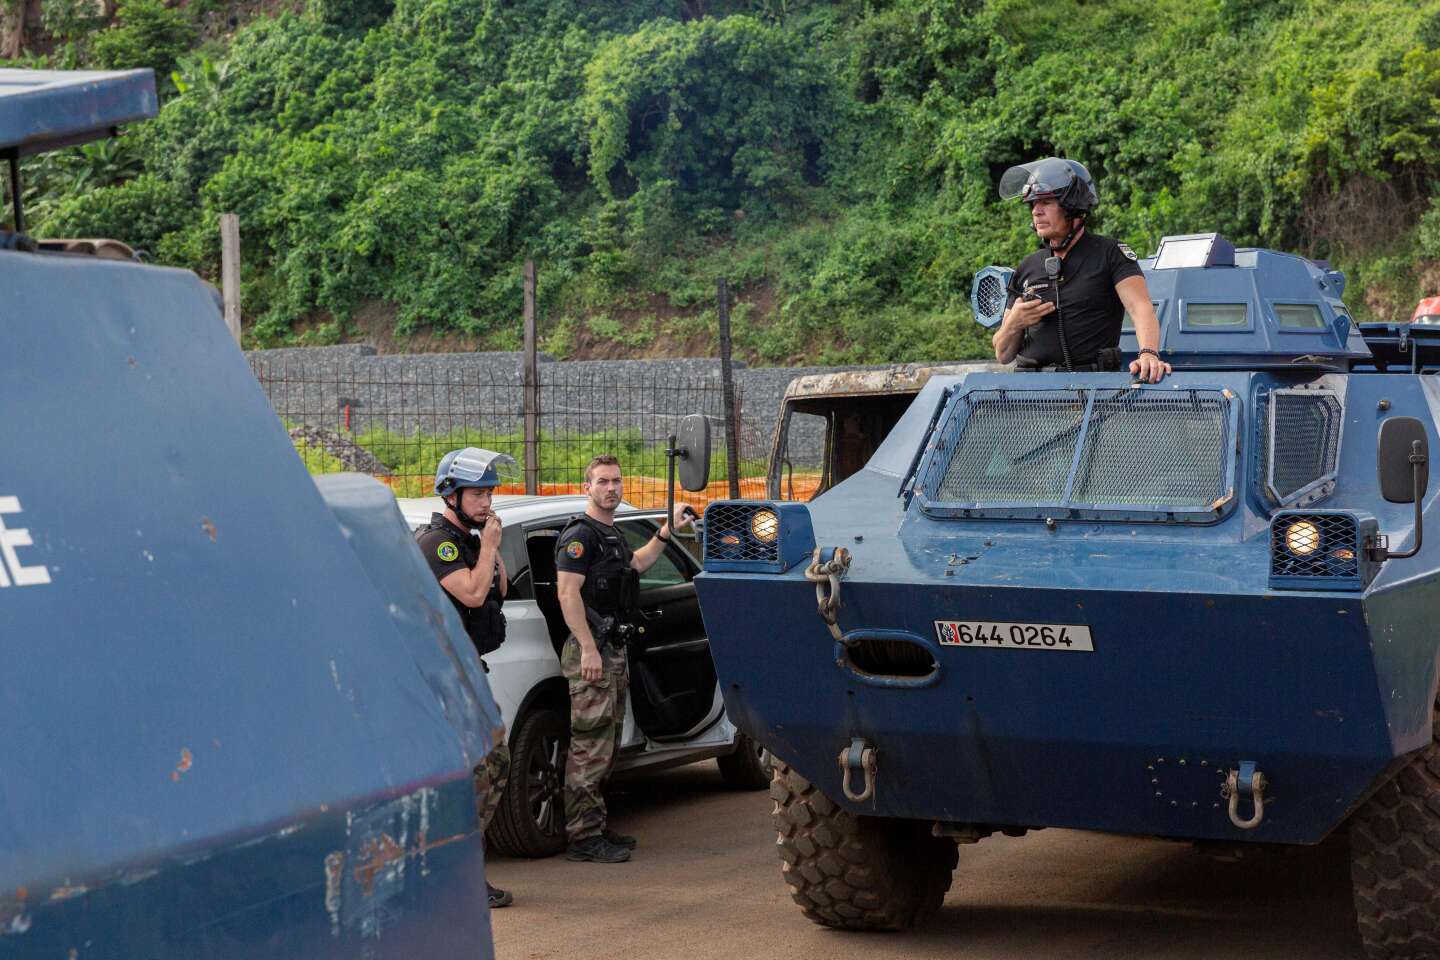 A Mayotte, le gouvernement lance une deuxième opération « Wuambushu » contre la délinquance et l’immigration irrégulière